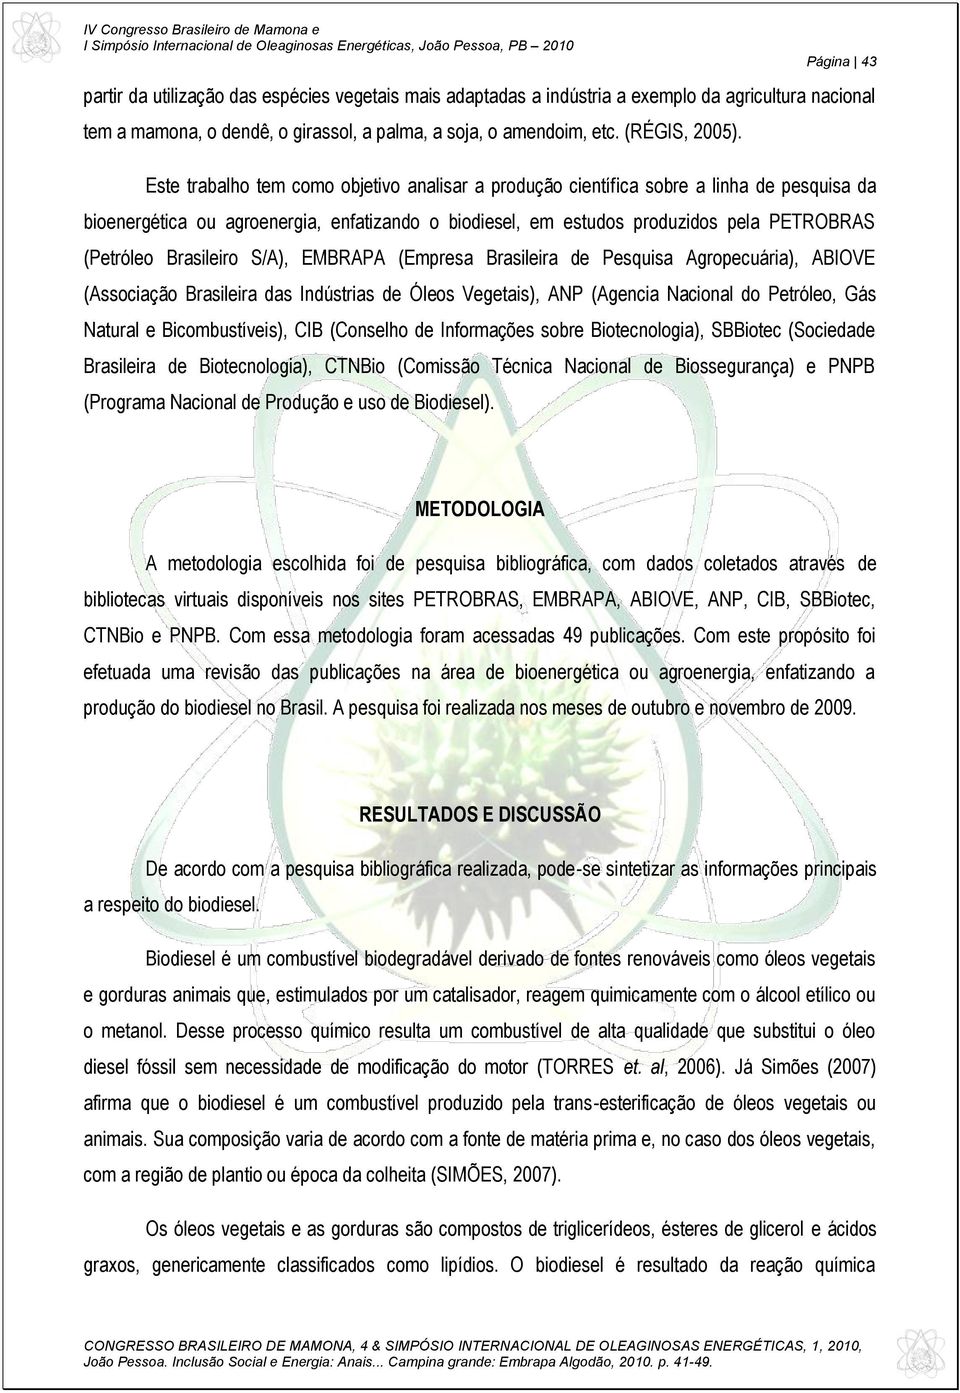 Brasileiro S/A), EMBRAPA (Empresa Brasileira de Pesquisa Agropecuária), ABIOVE (Associação Brasileira das Indústrias de Óleos Vegetais), ANP (Agencia Nacional do Petróleo, Gás Natural e